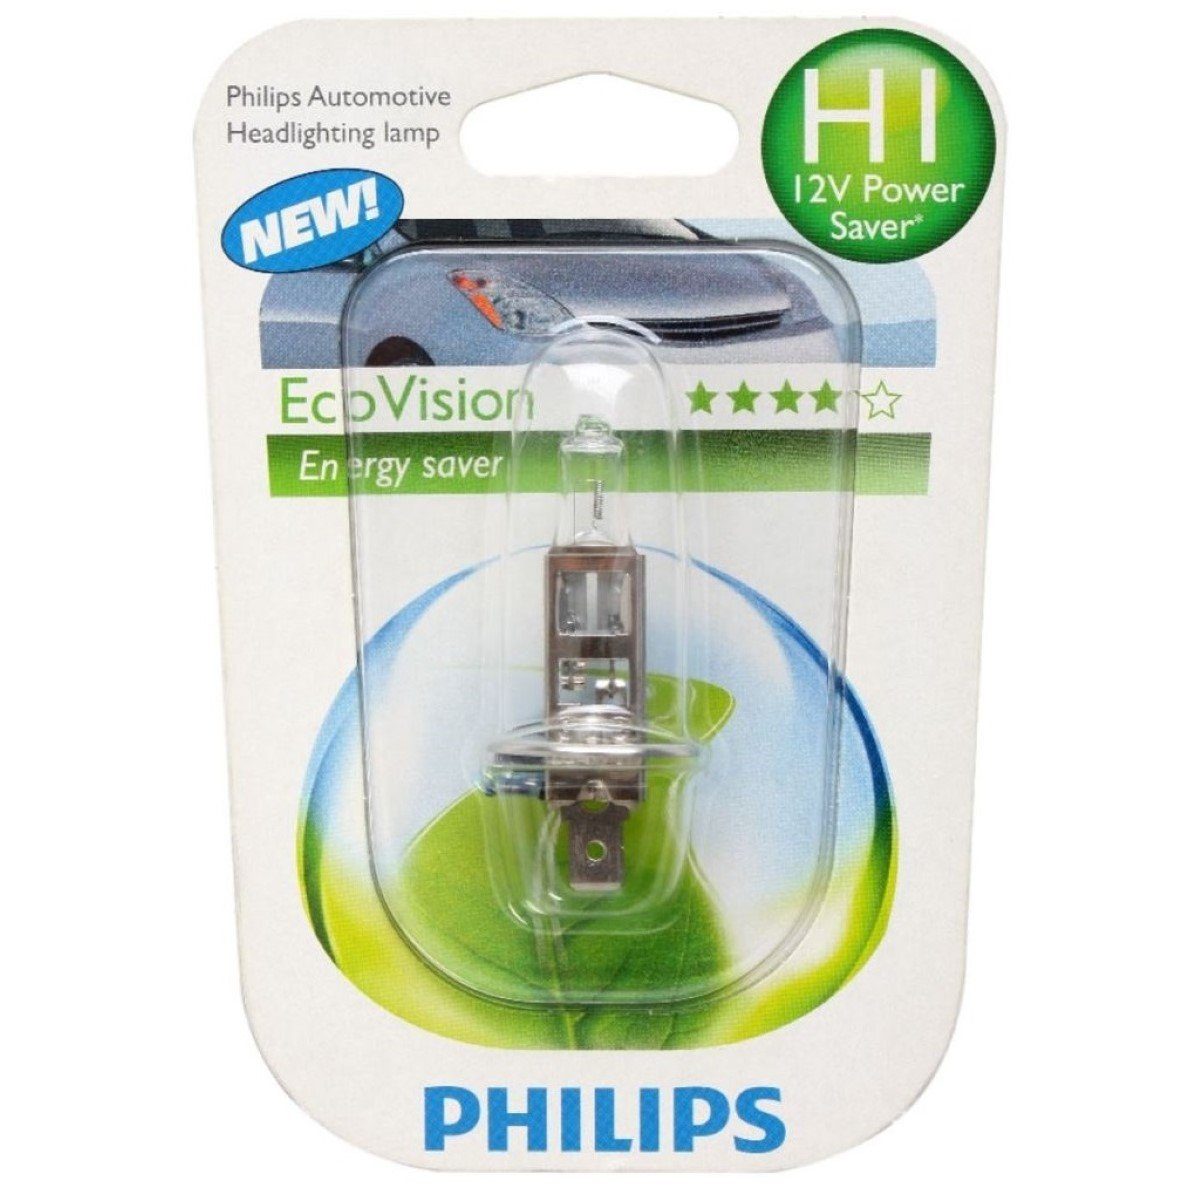 Philips LED Scheinwerfer H1 Eco-Vision 12V 55W Energysaver Auto-Lampe,  Hauptscheinwerfer, Halogen, Weiß, Halogen-Lampe mit mehr Licht, 12V Halogen- Birnen Scheinwerfer-Lampe, Auto-Birne mit Sockel H1 P14,5s